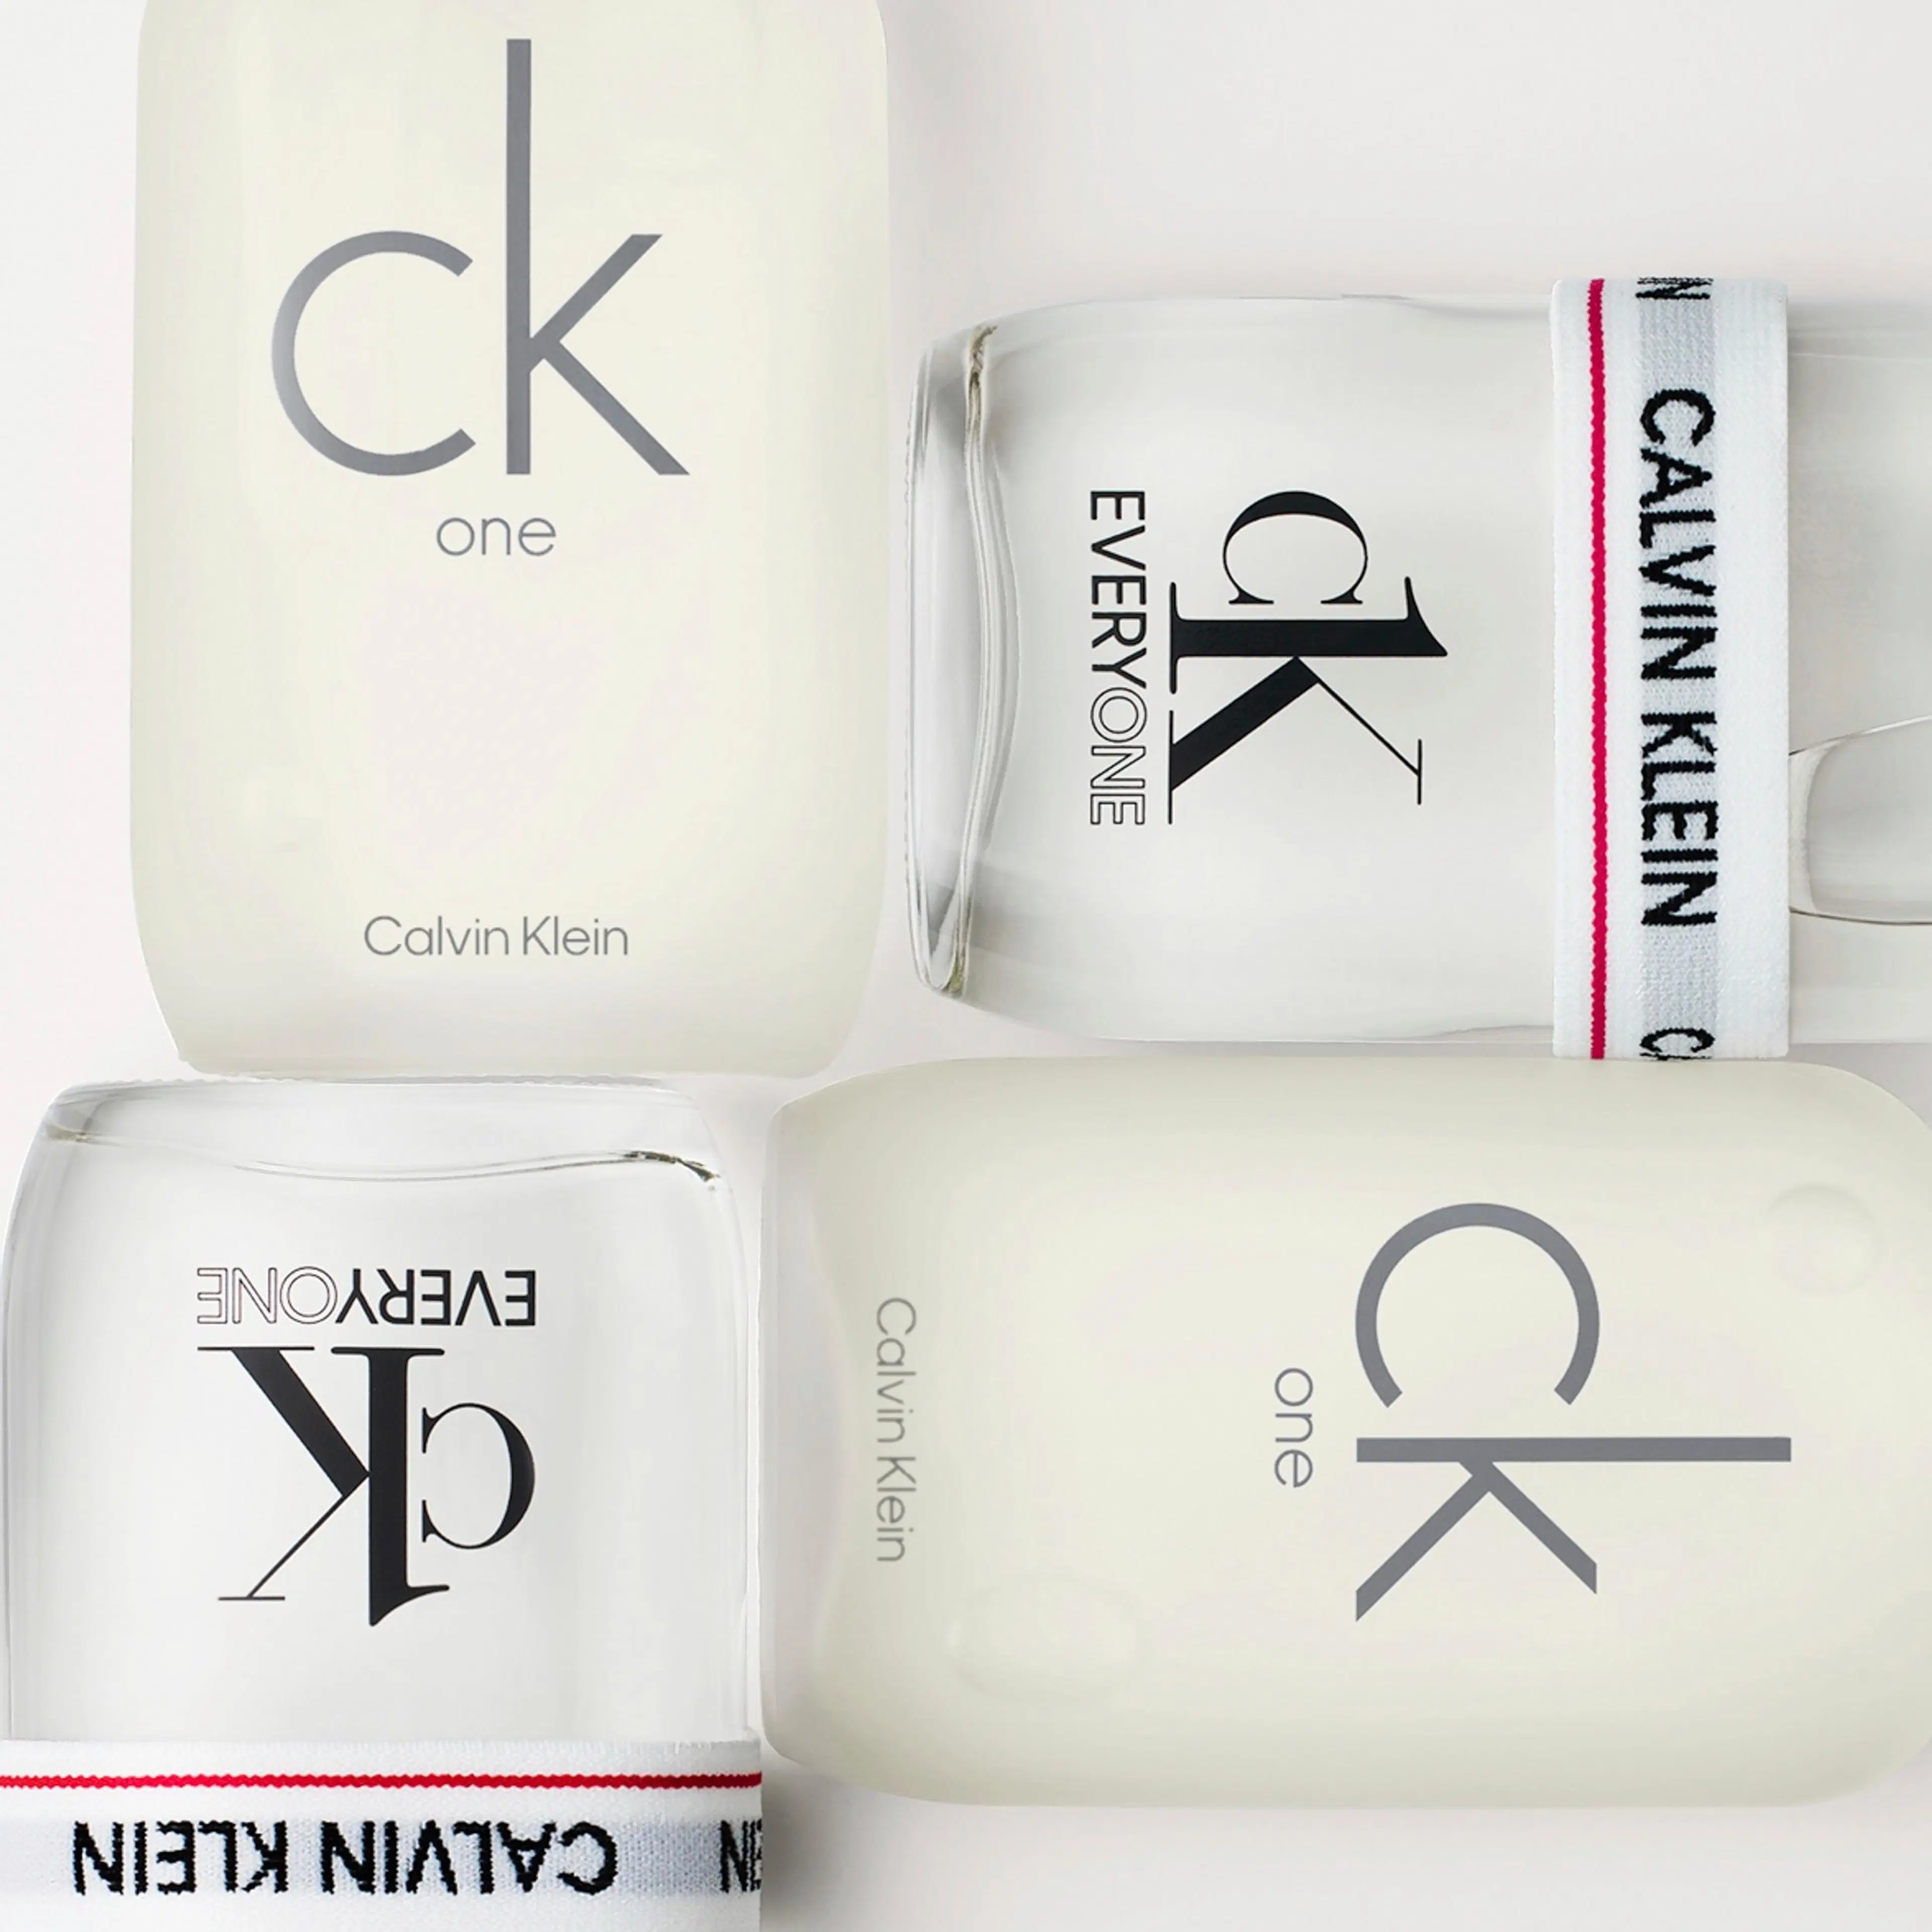 Calvin Klein CK Everyone EdT tuoksu 100 ml